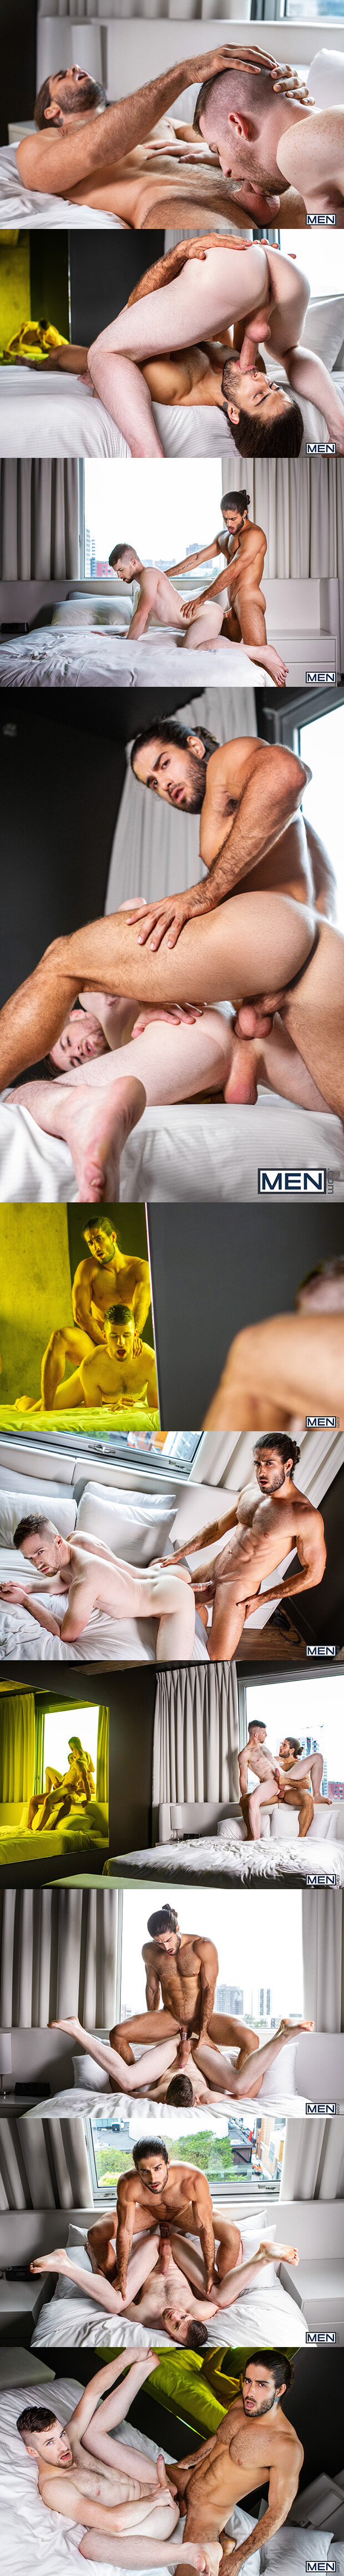 Men.com | Secret Affairs (Diego Sans & Thyle Knoxx)